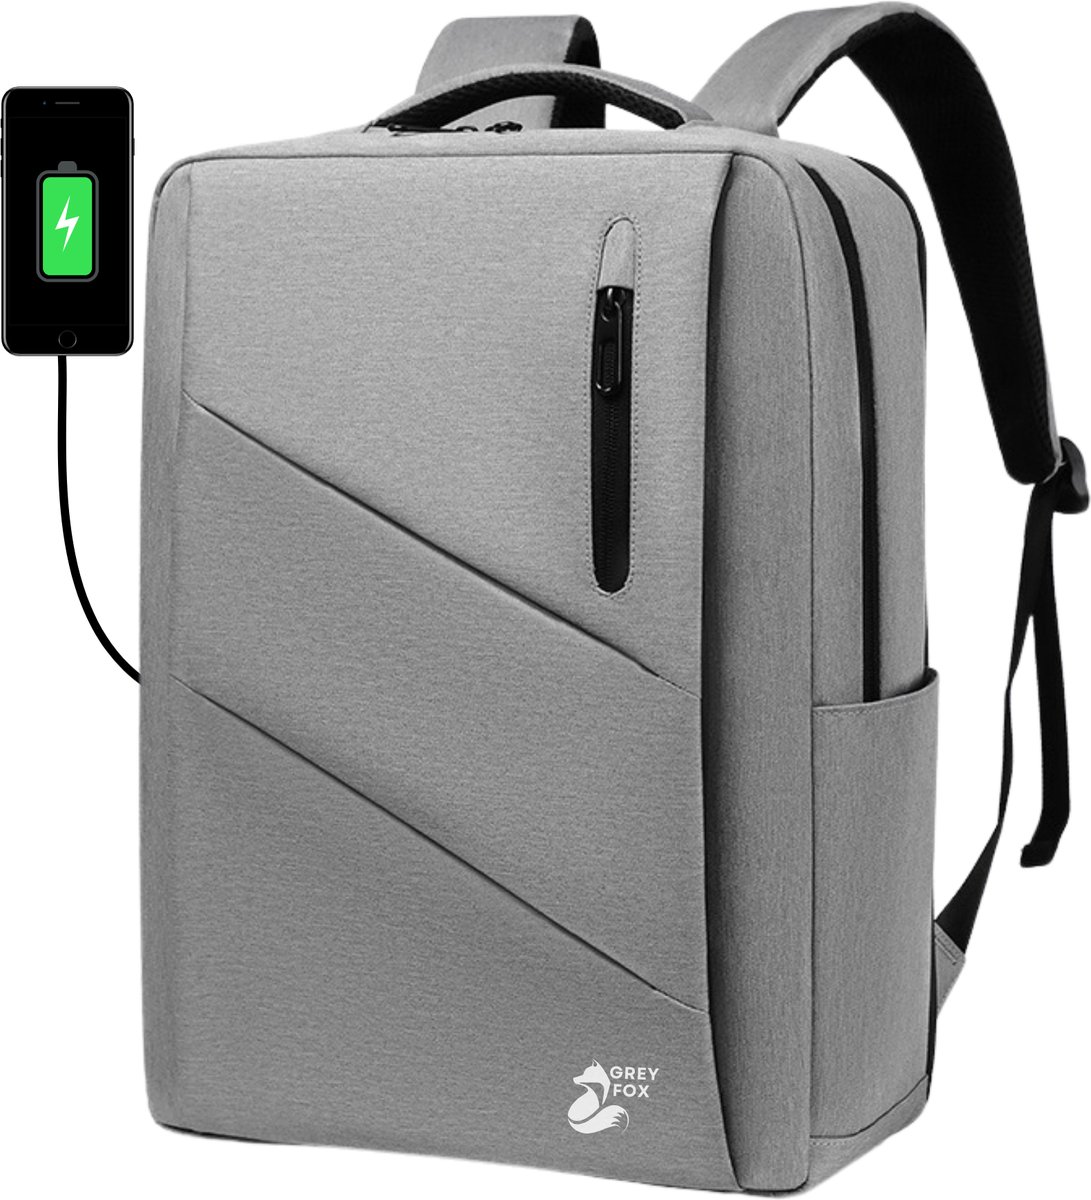 Grey Fox Laptop Rugzak met USB Oplaadpoort - 17,3 inch - Schooltas - Waterafstotend - Kofferinsteek - 31L Ruime Capaciteit - Grijs